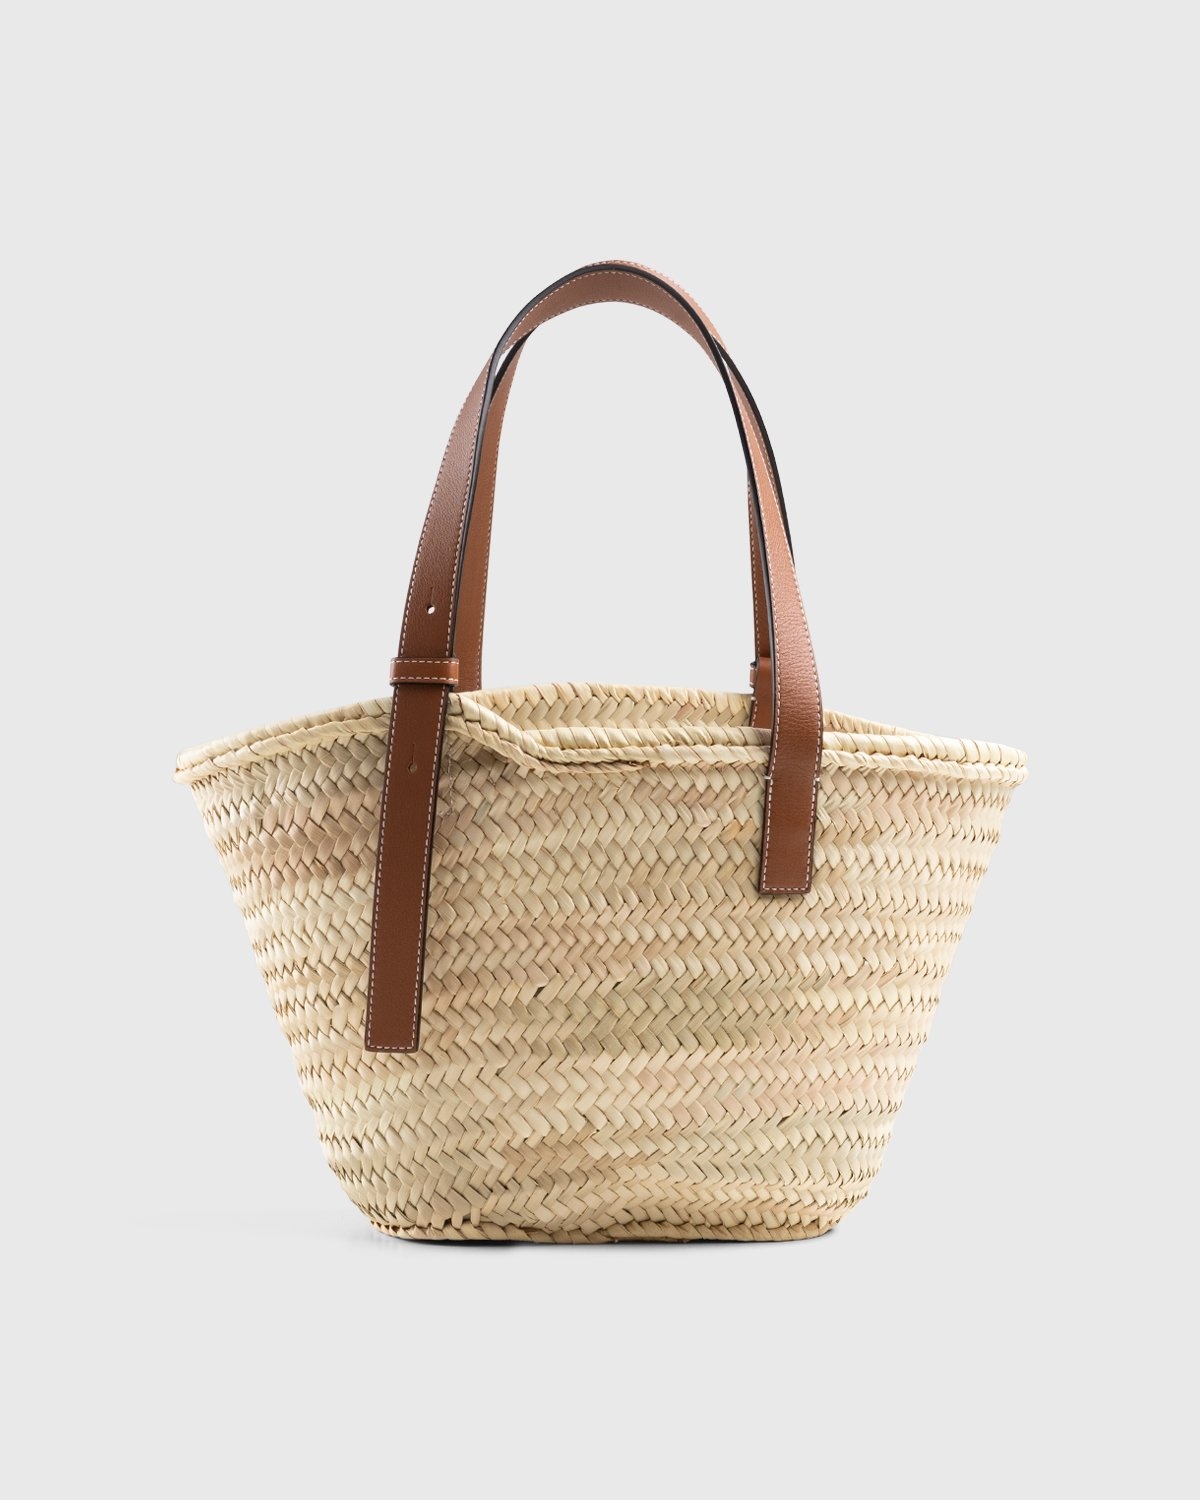 Loewe – Paula's Ibiza Basket Bag Natural/Tan - Shoulder Bags - Beige - Image 2